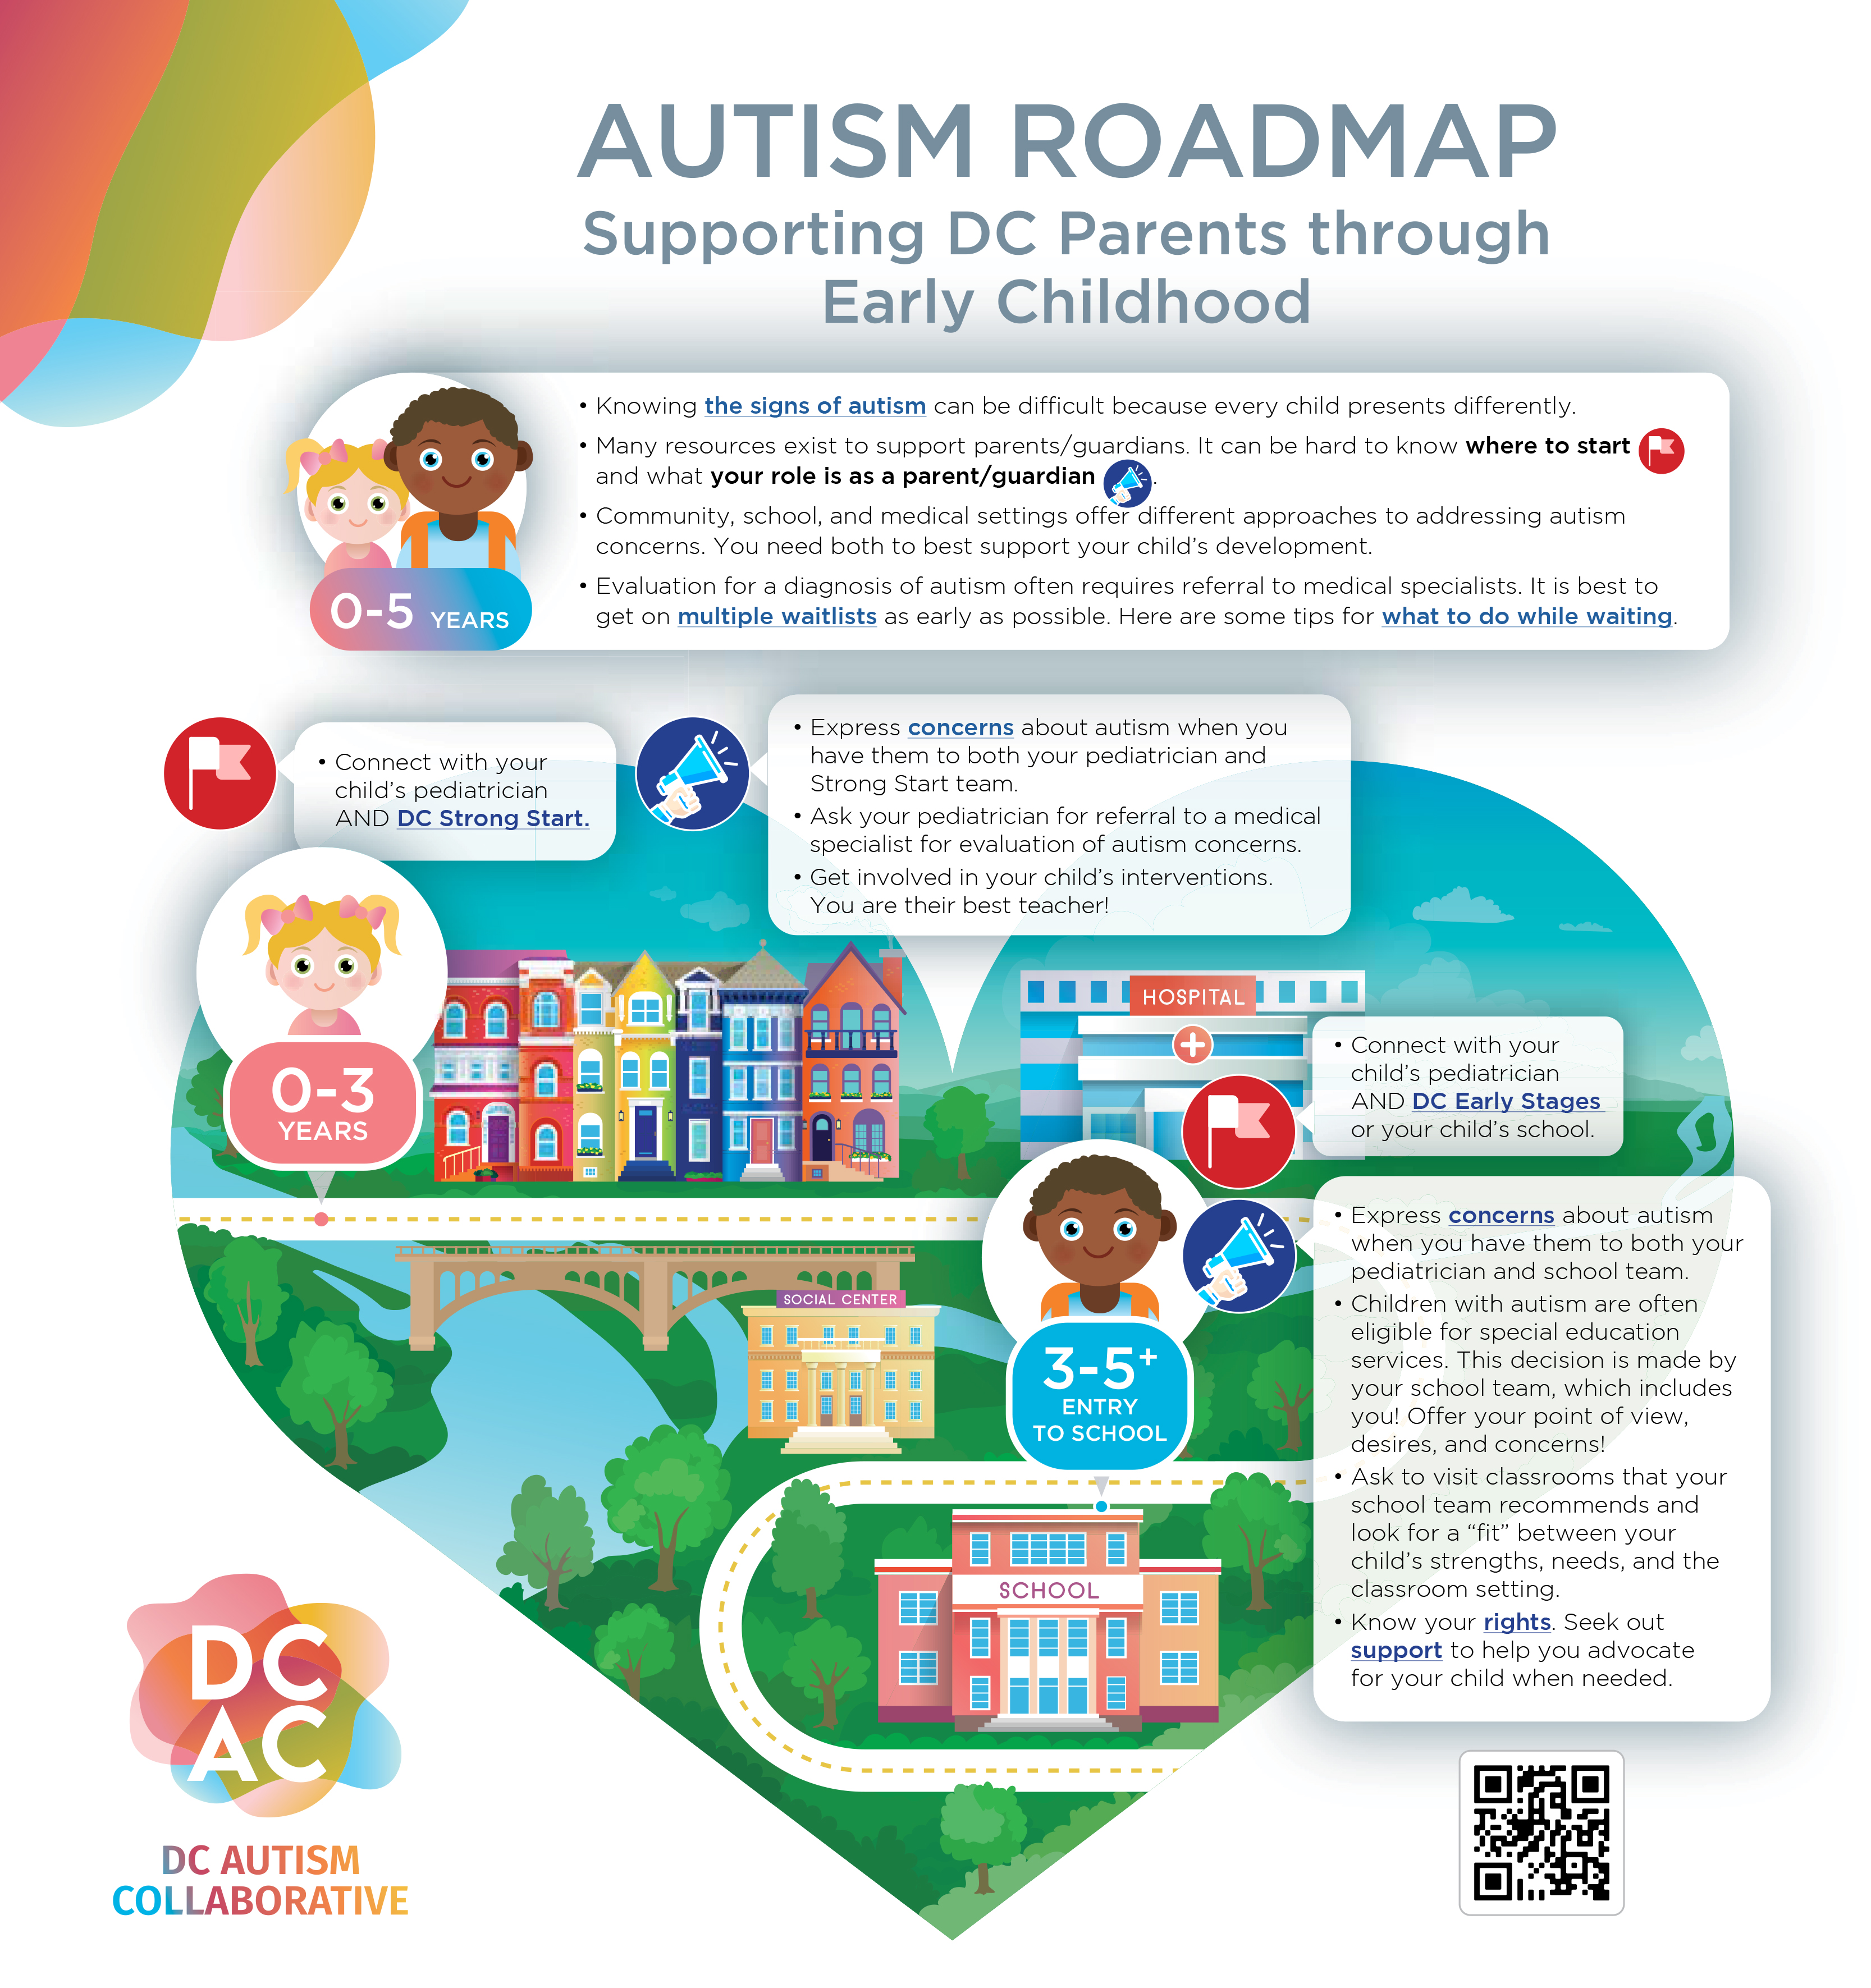 Autism roadmap infographic